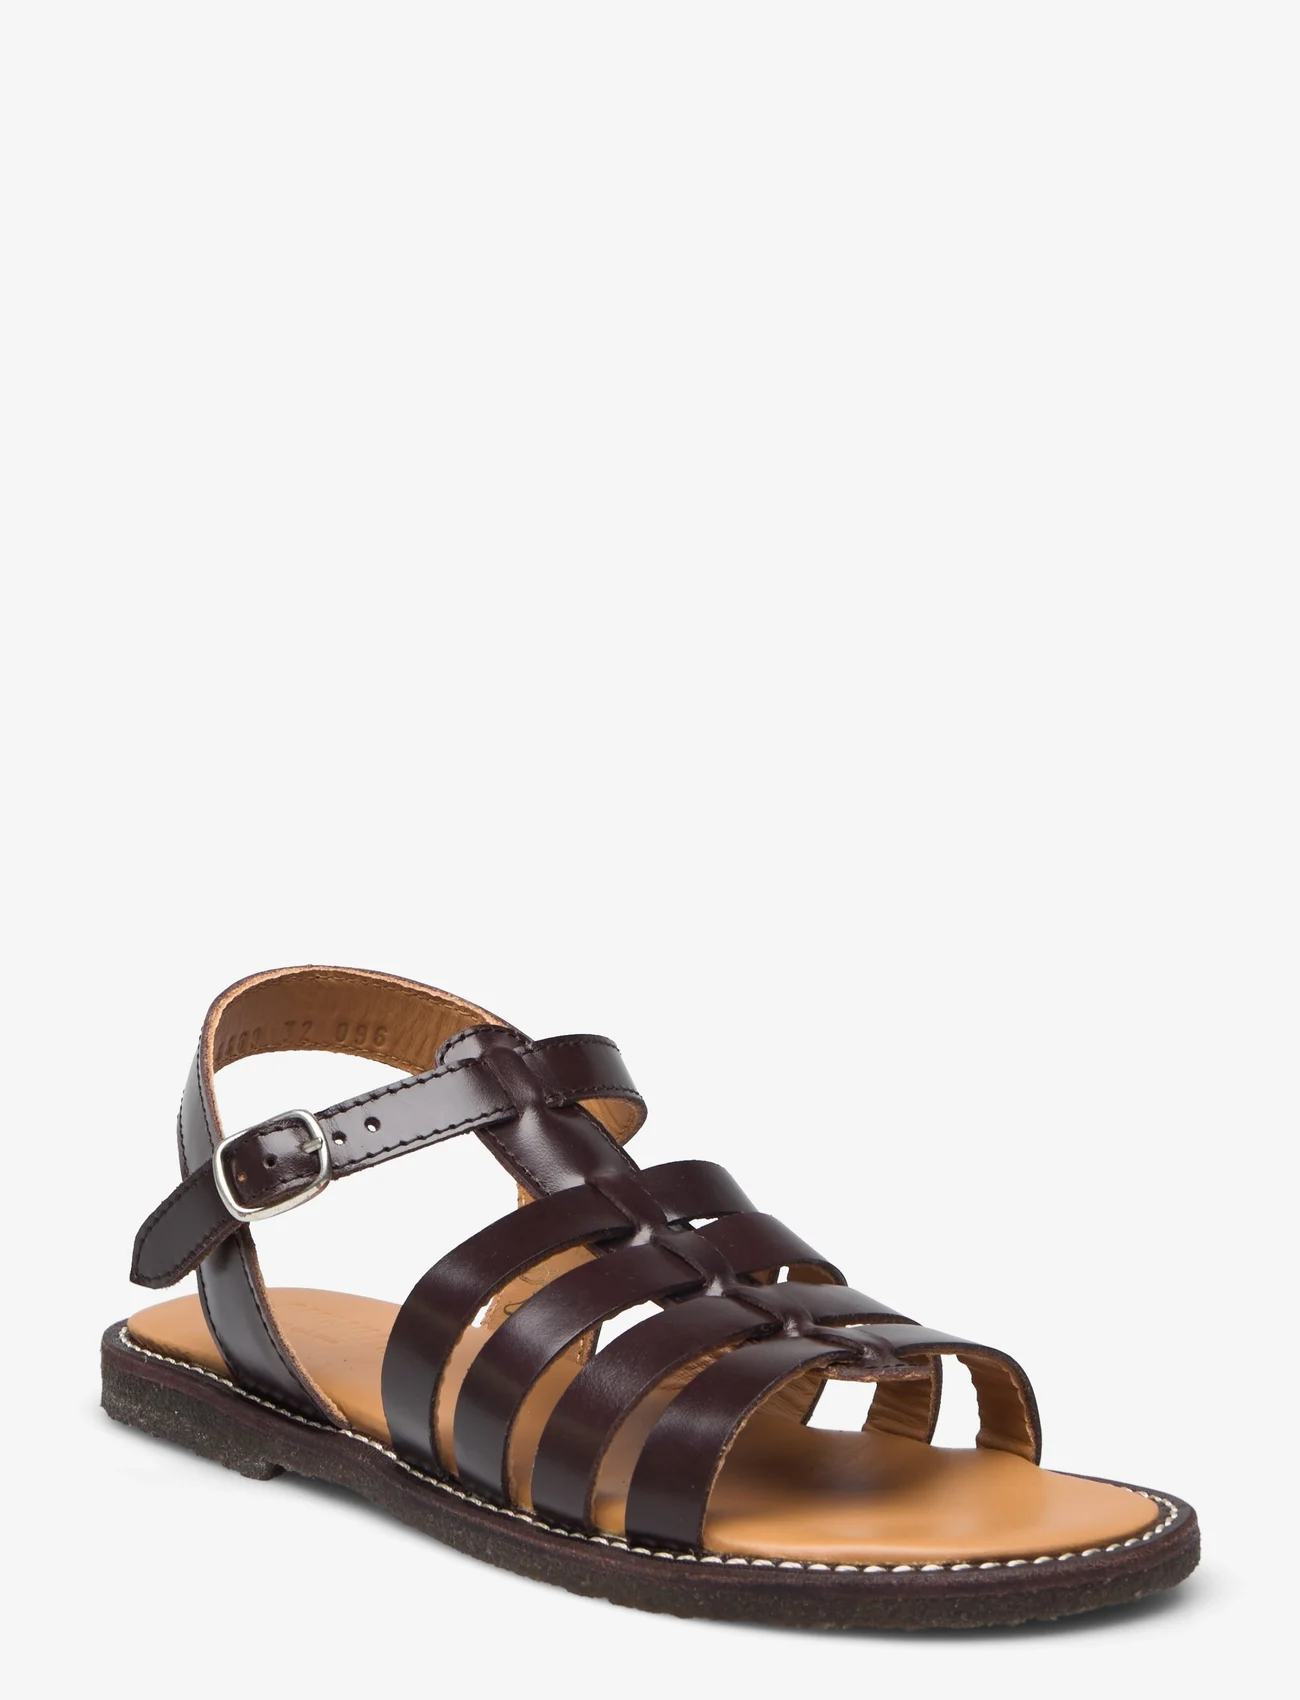 ANGULUS - Sandals - flat - open toe - op - sandals - 1836 dark brown - 0